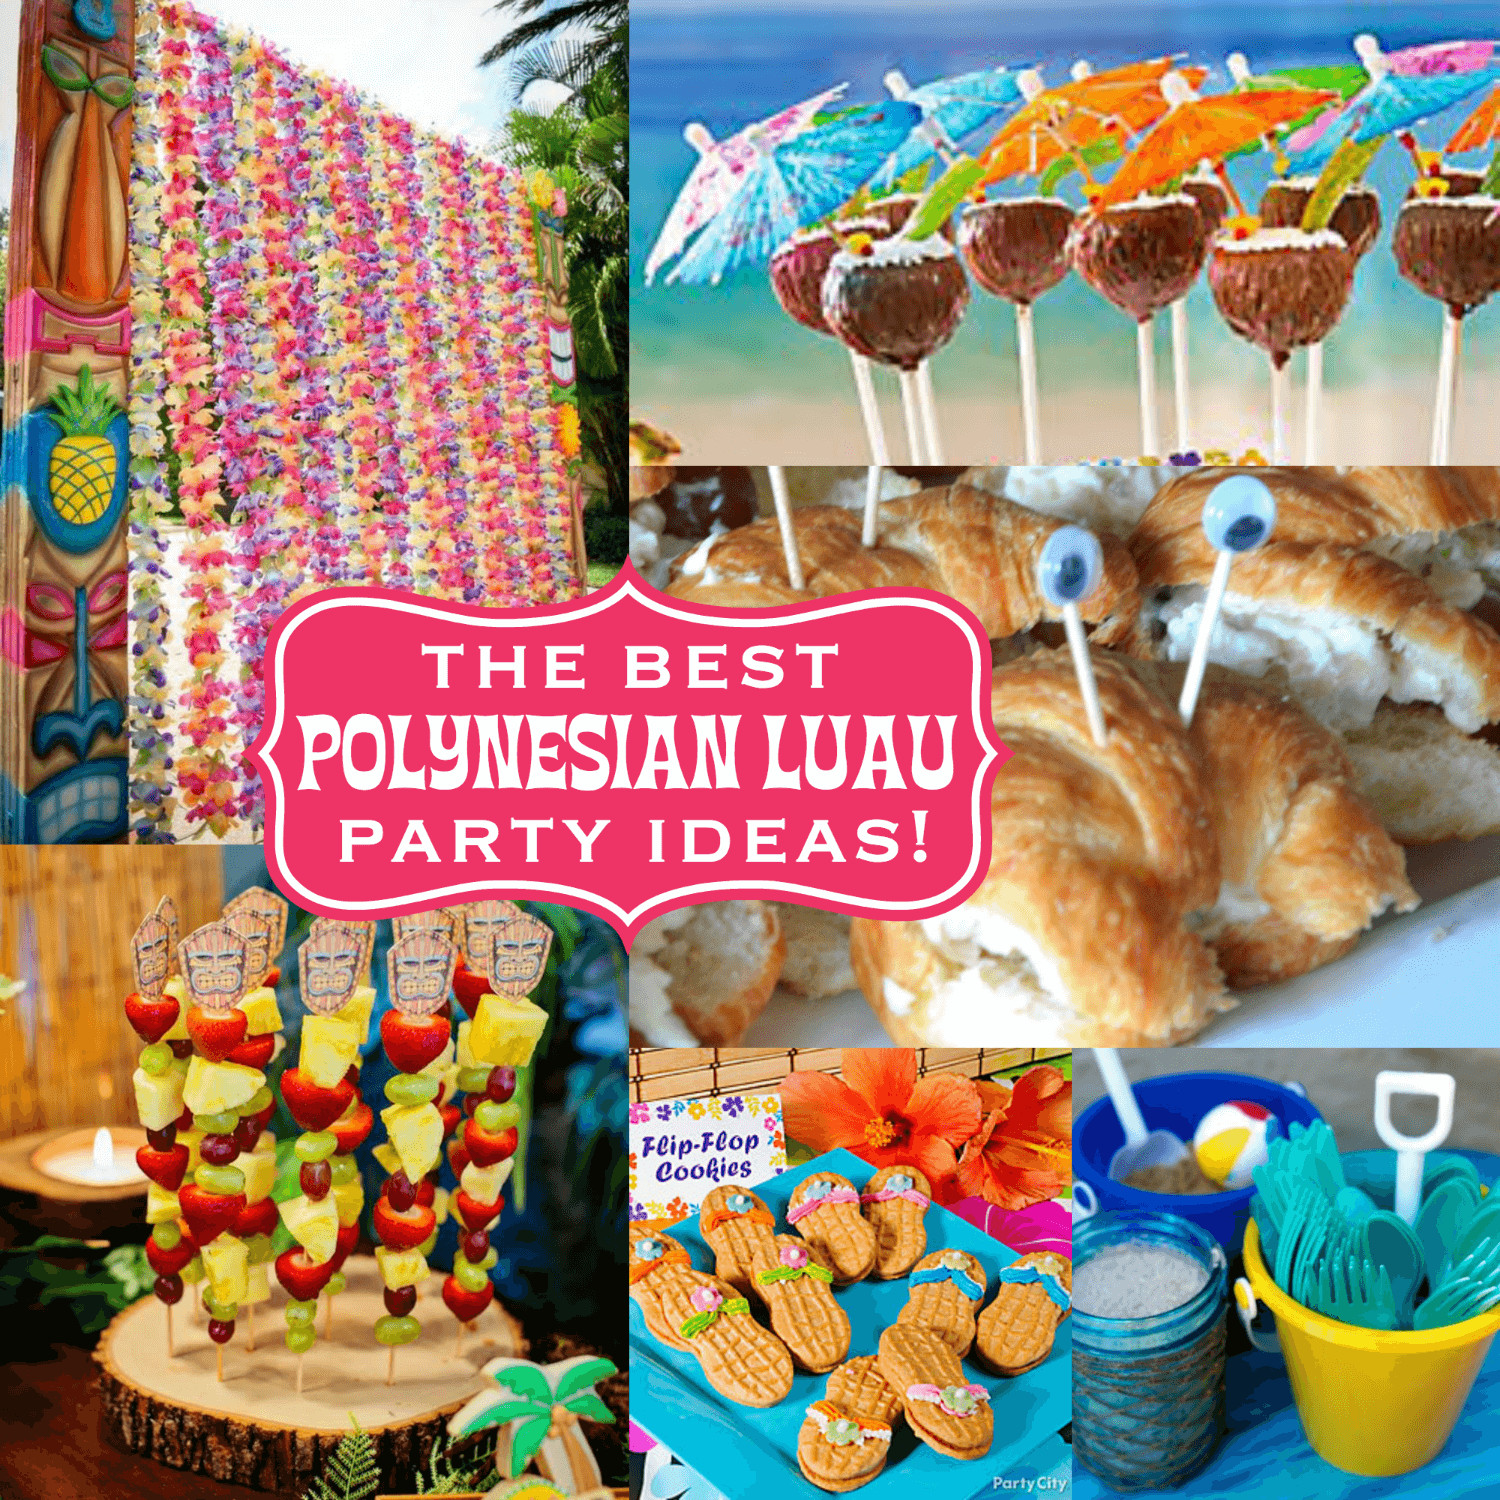 Tiki Party Food Ideas
 The Best Polynesian Luau Party Ideas for a Tiki Celebration